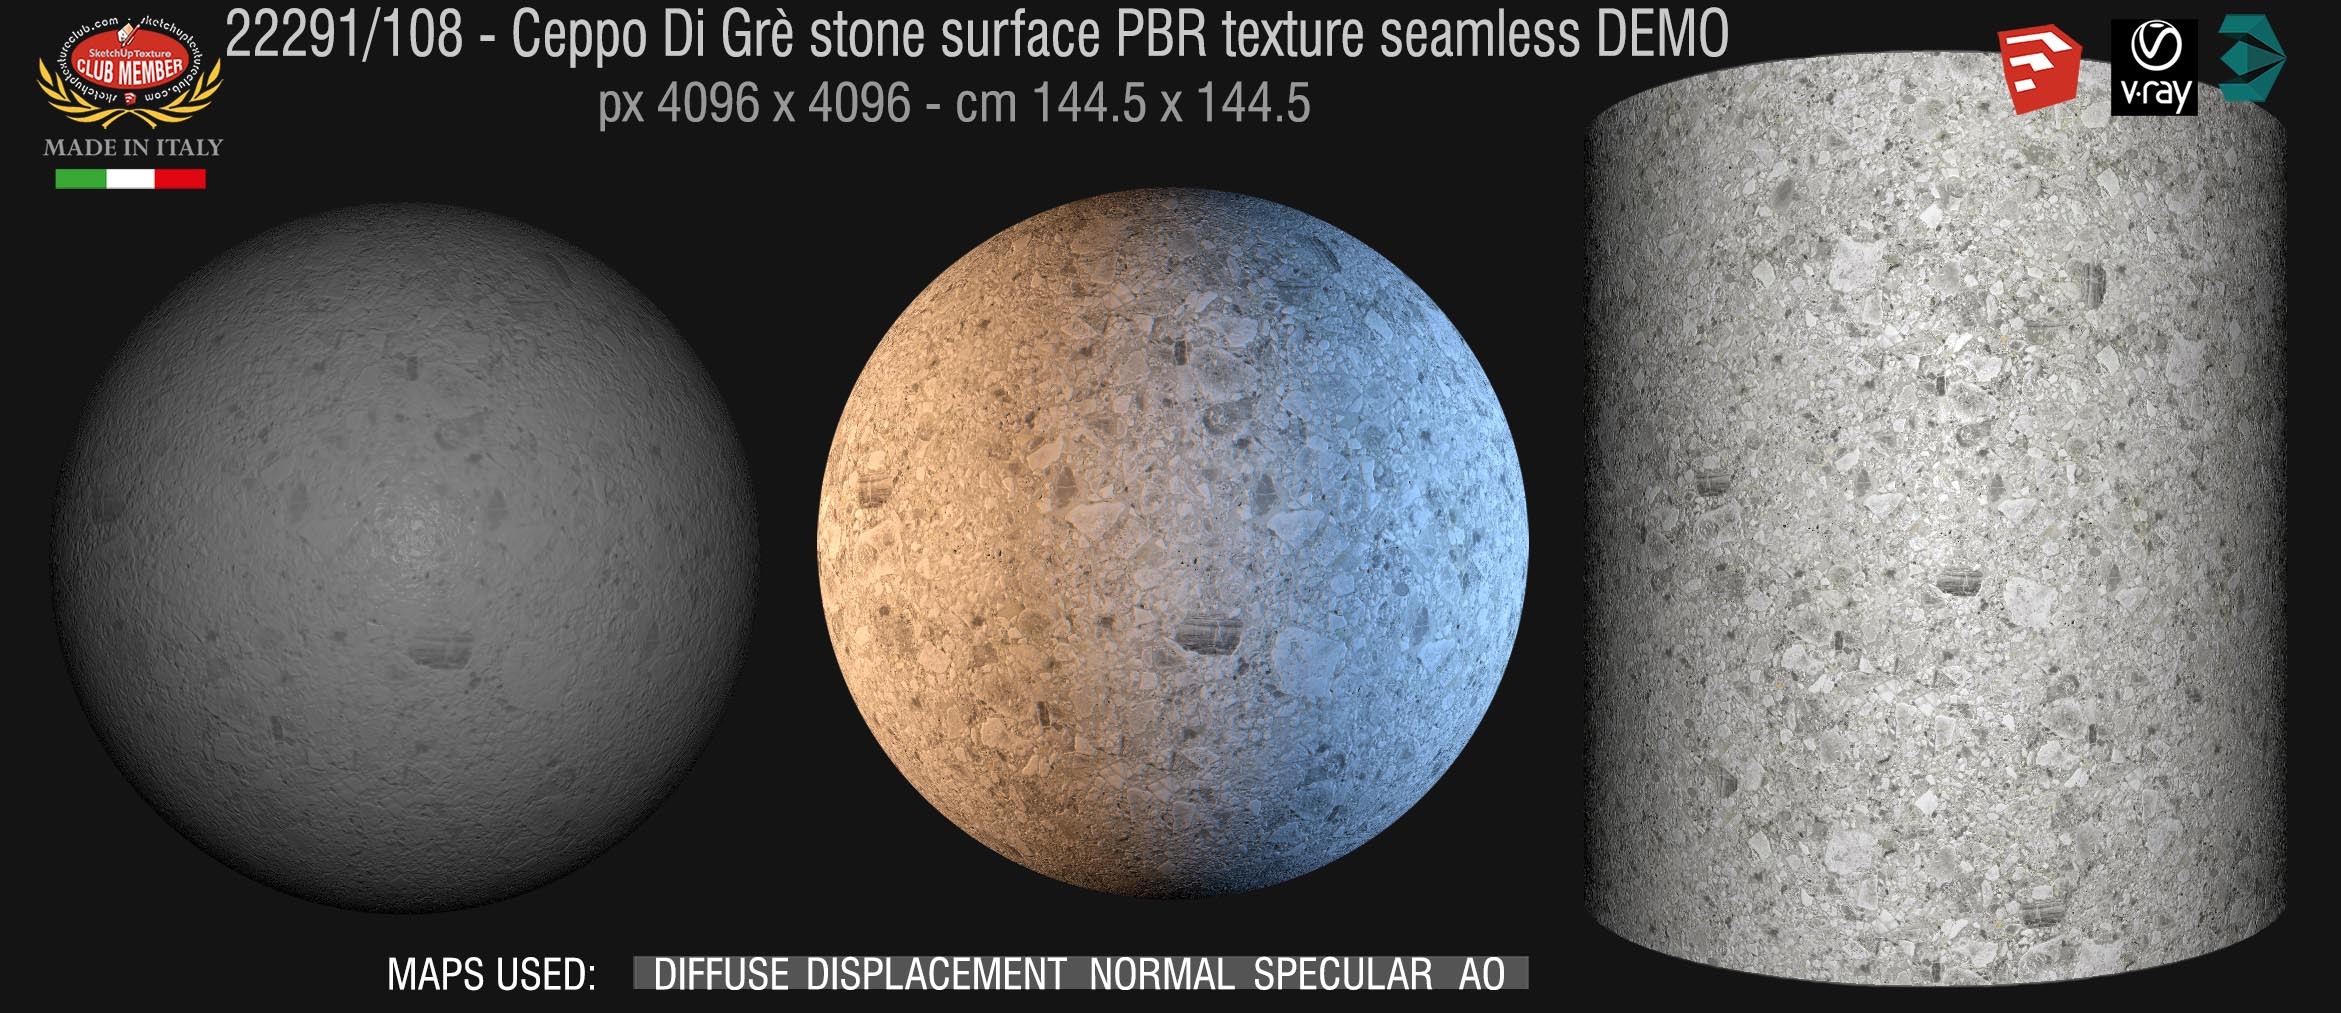 22291_108 Ceppo Di Grè stone surface PBR texture seamless DEMO